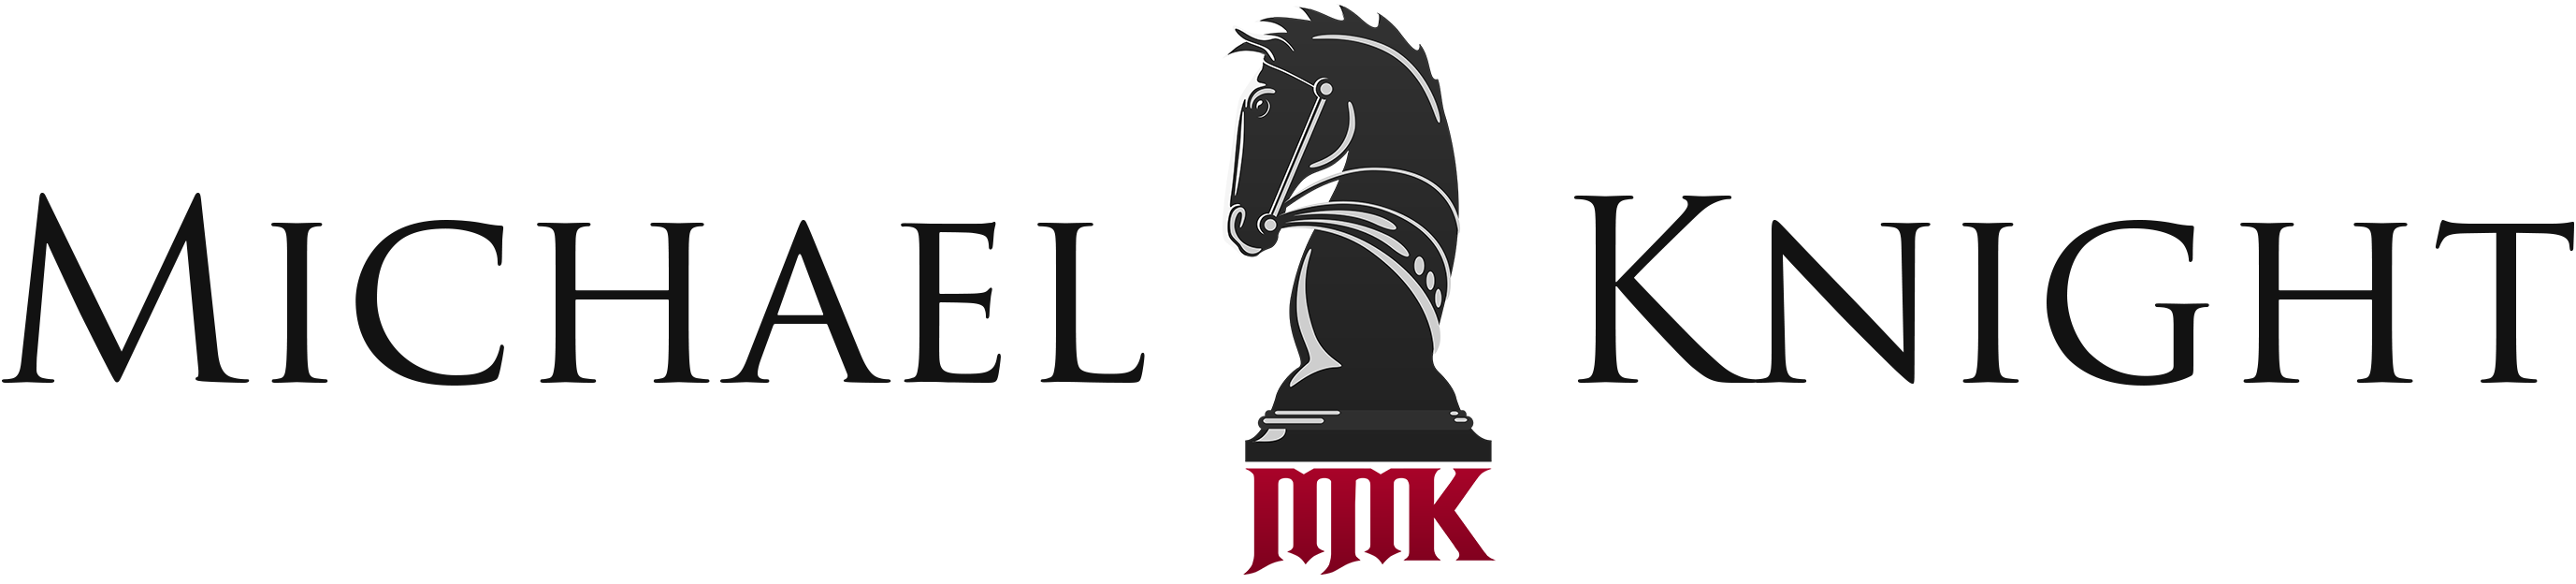 MMK_Name_Logo_Black_Large